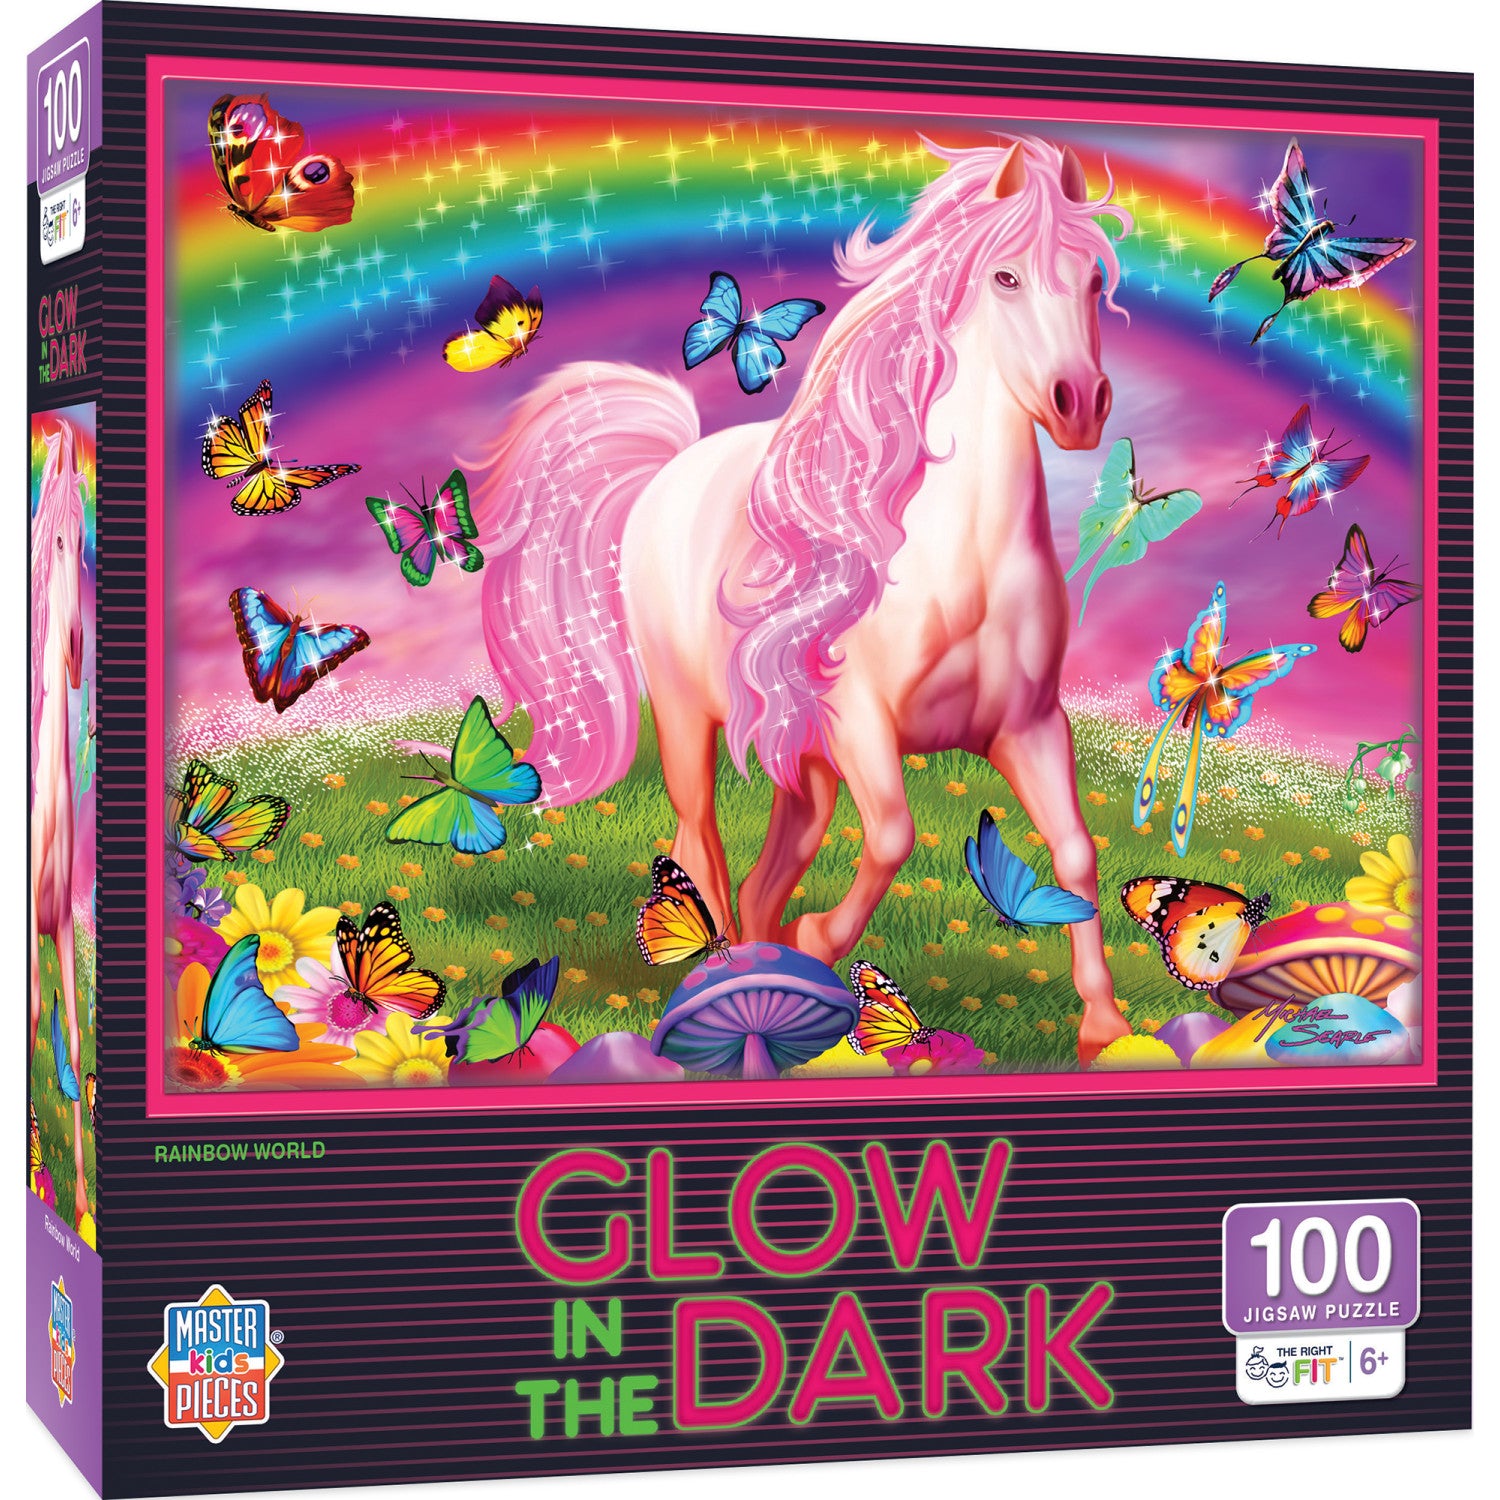 Glow in the Dark - Rainbow World 100 Piece Jigsaw Puzzle